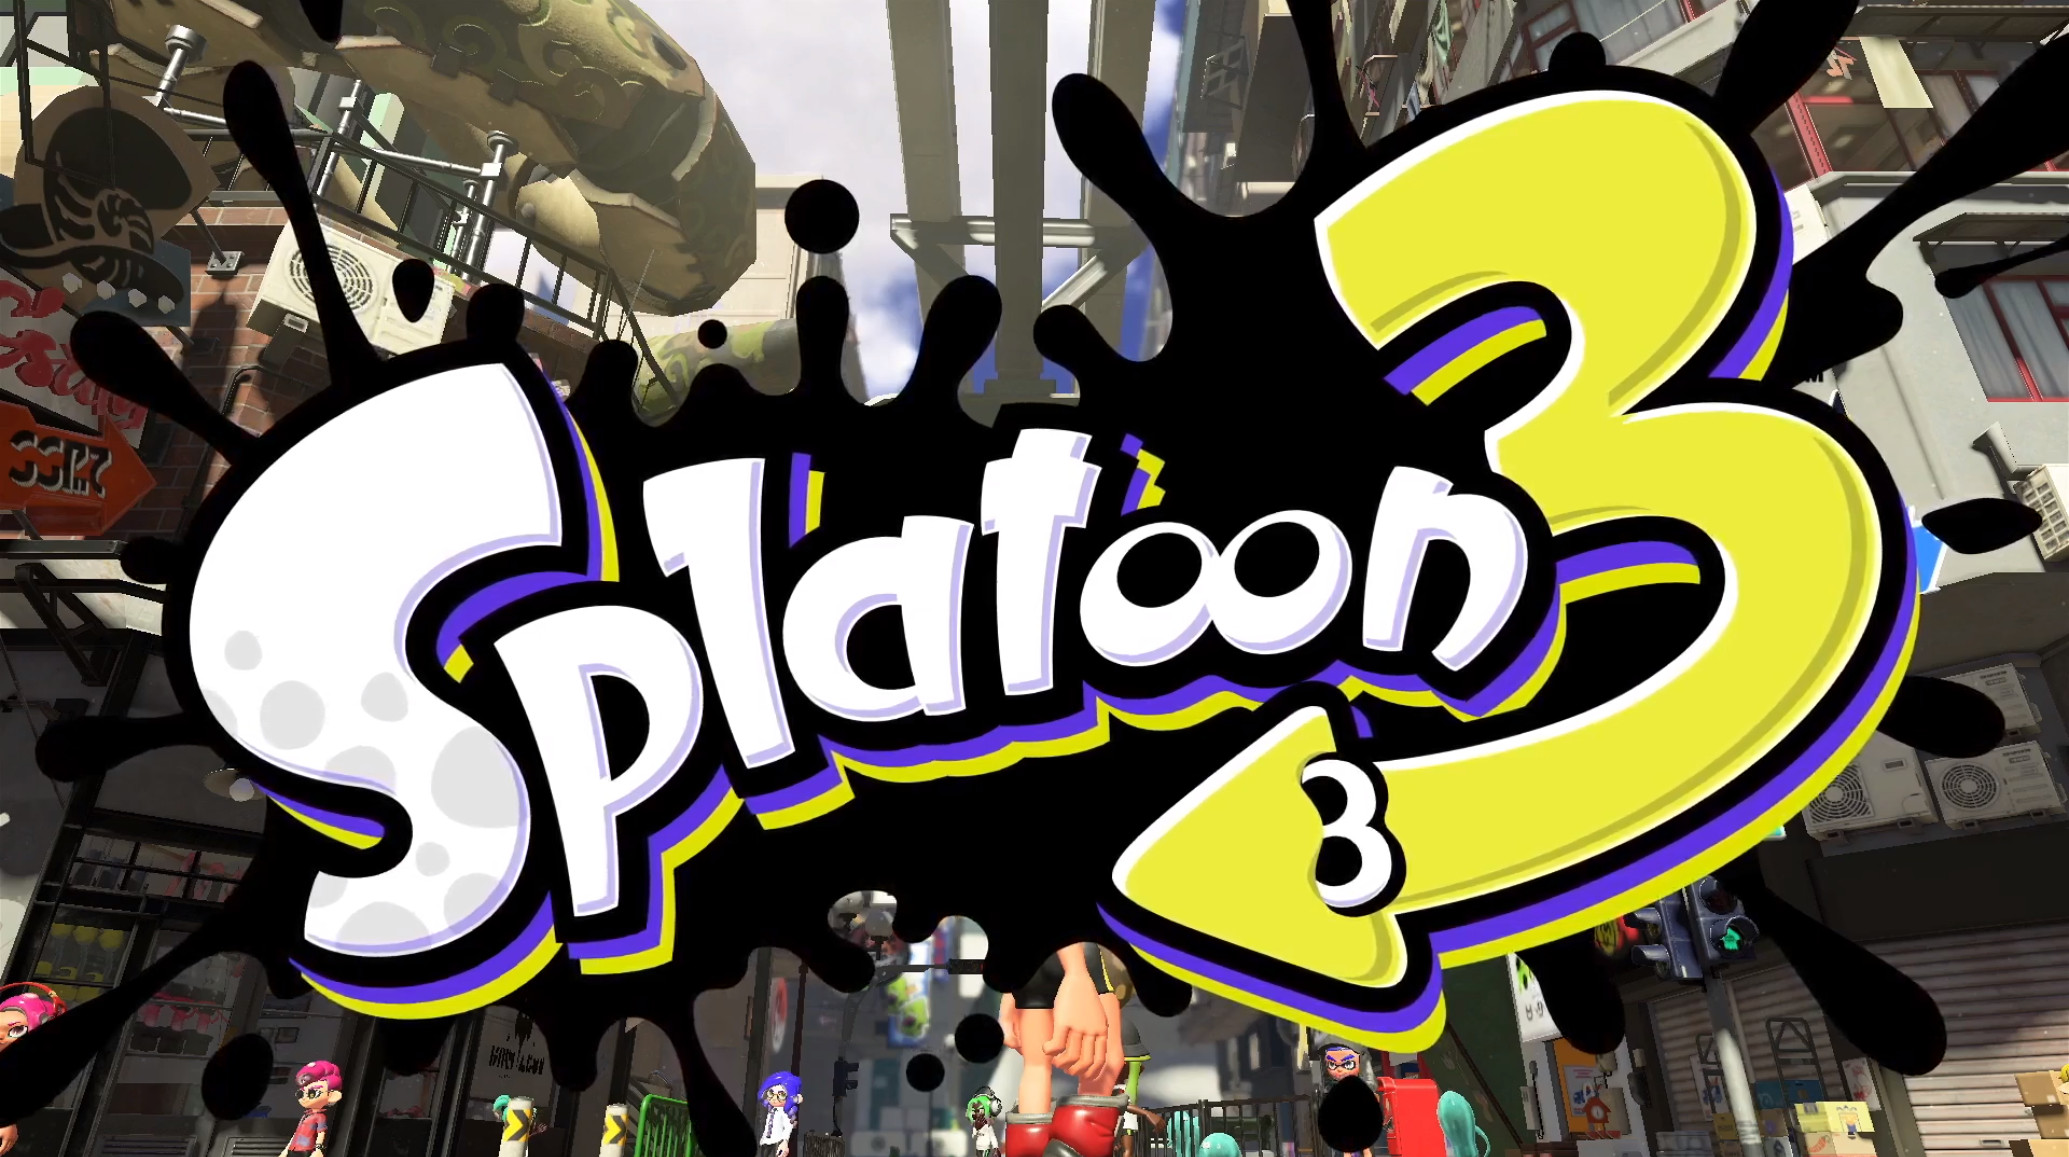 Splatoon 3 release date